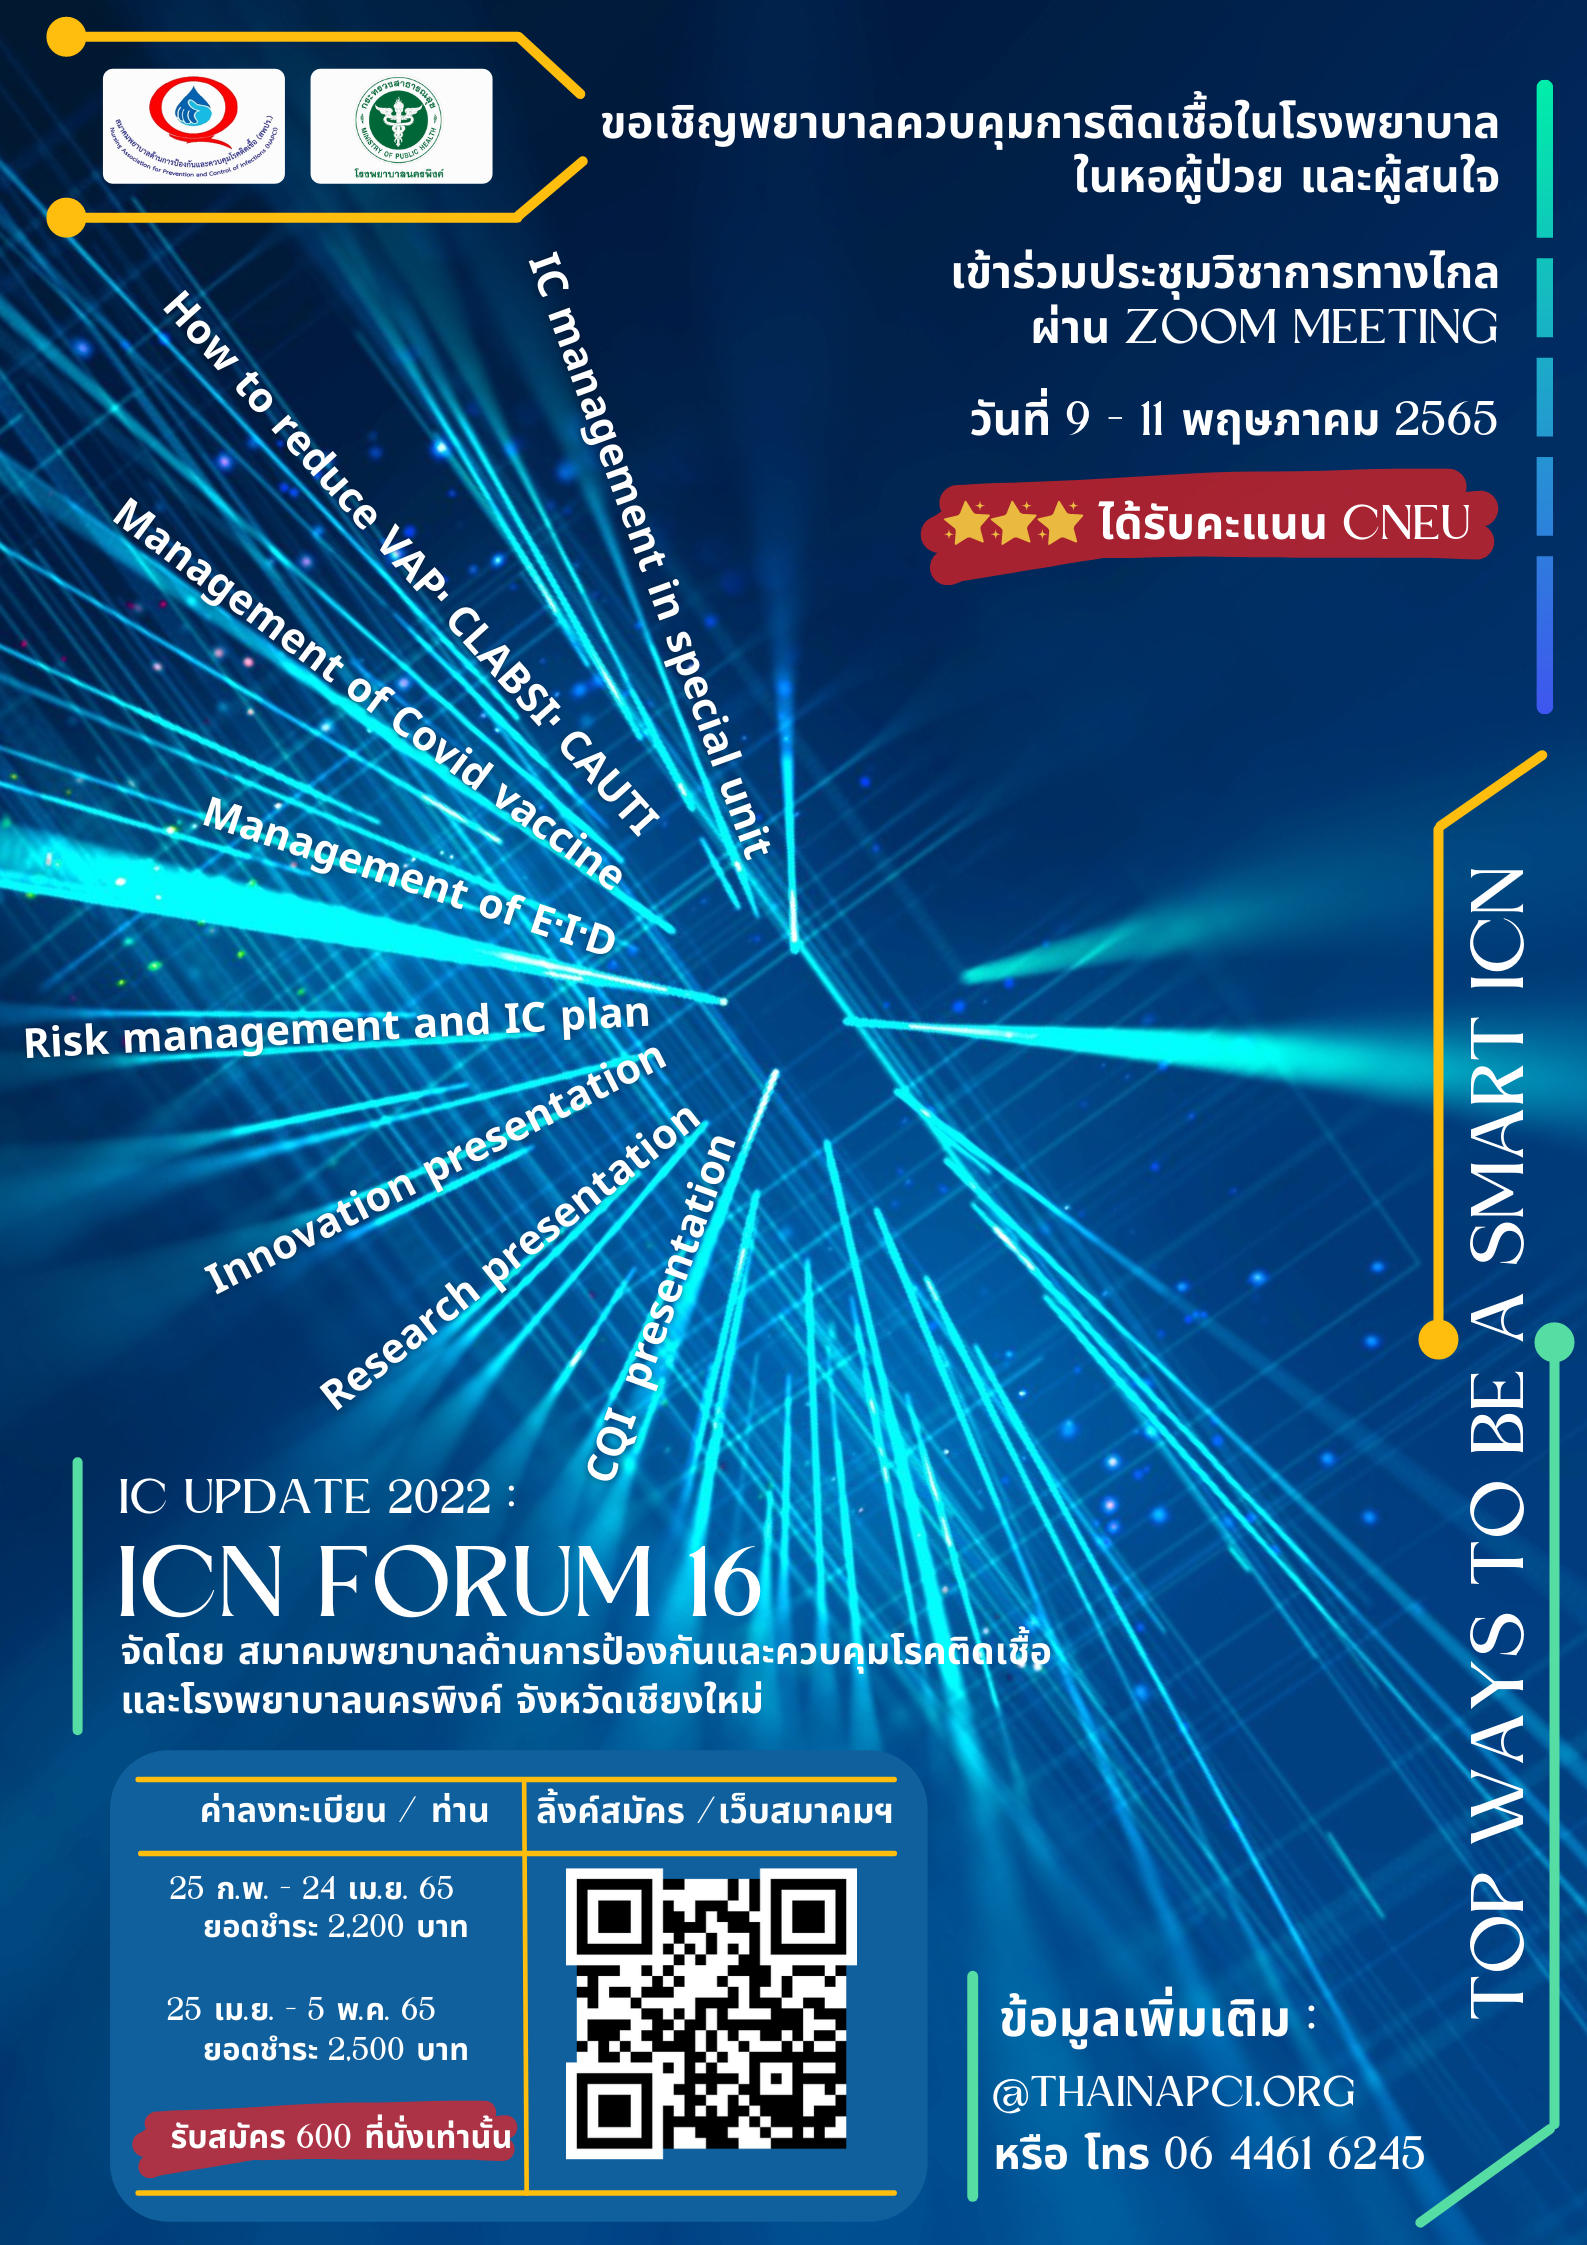 ขอประชาสัมพันธ์เชิญชวนพยาบาลและผู้สนใจเข้าร่วมประชุมวิชาการ ICN Forum ครั้งที่ 16 ระหว่างวันที่ 9 ถึง 11 พฤษภาคม 2565